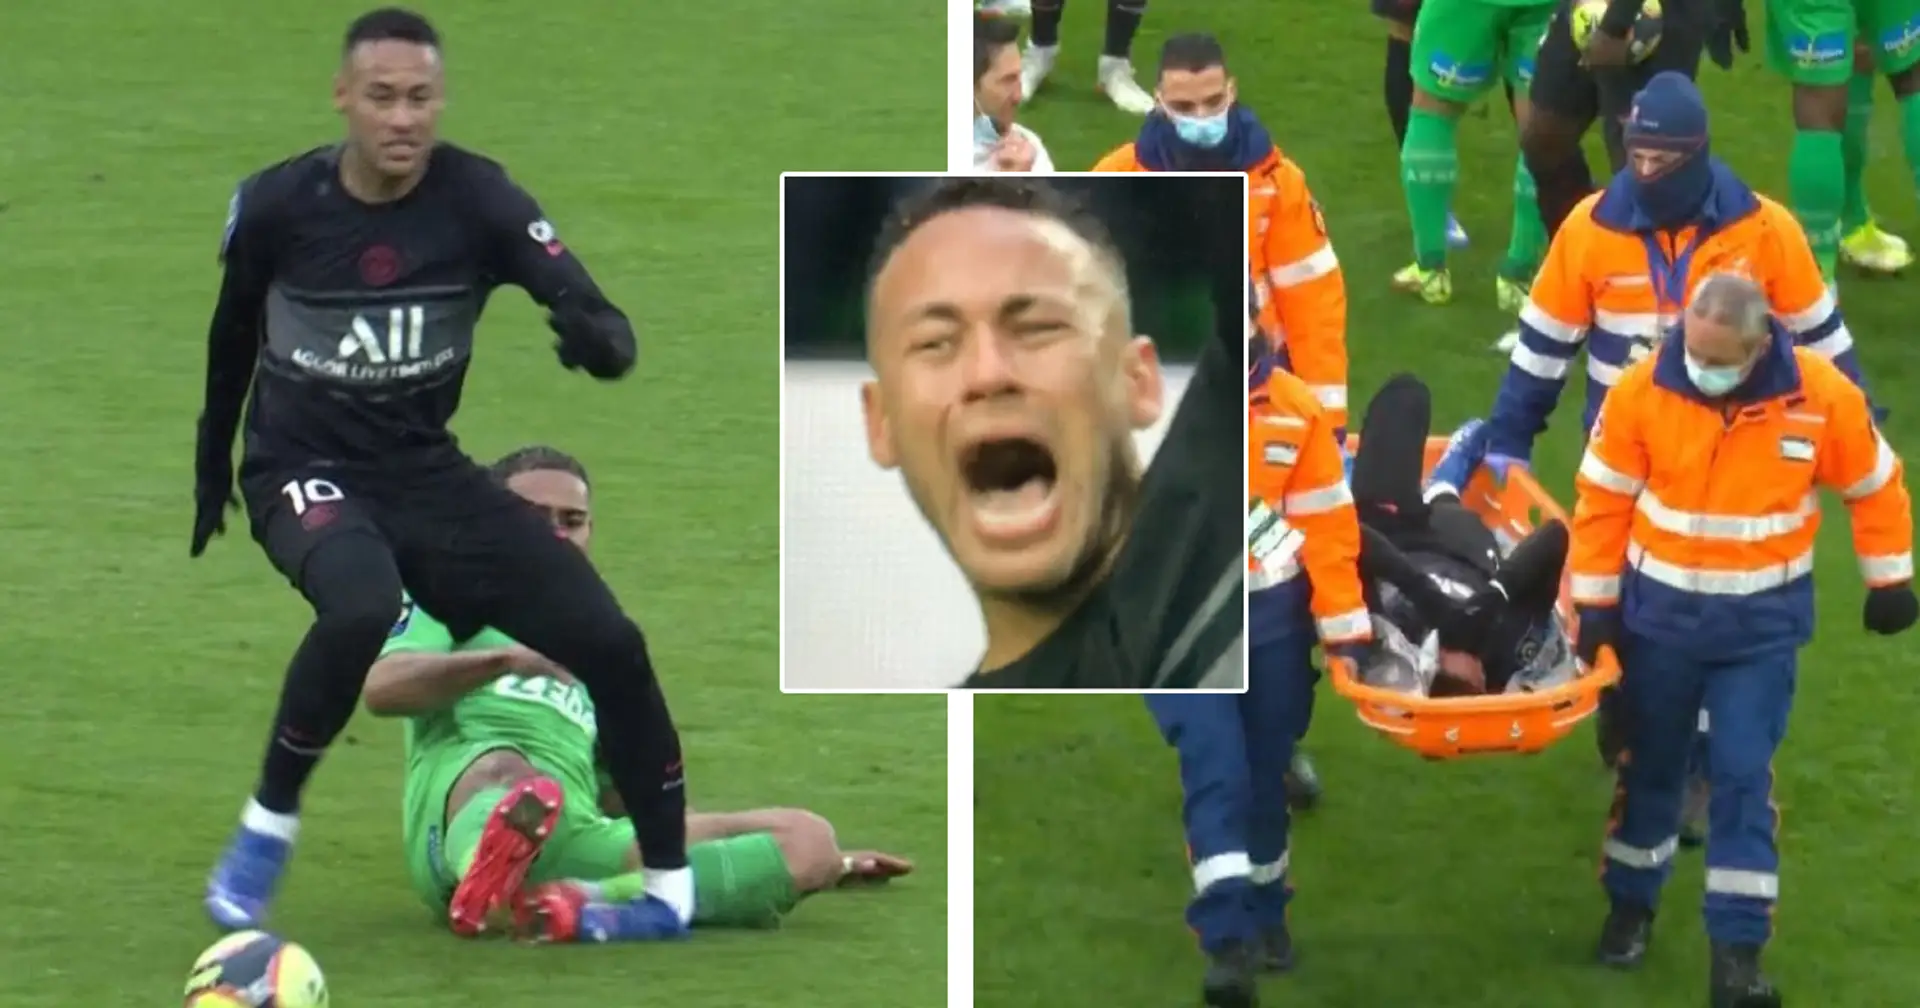 Neymar brach in Tränen nach einer schweren Verletzung gegen St. Etienne aus